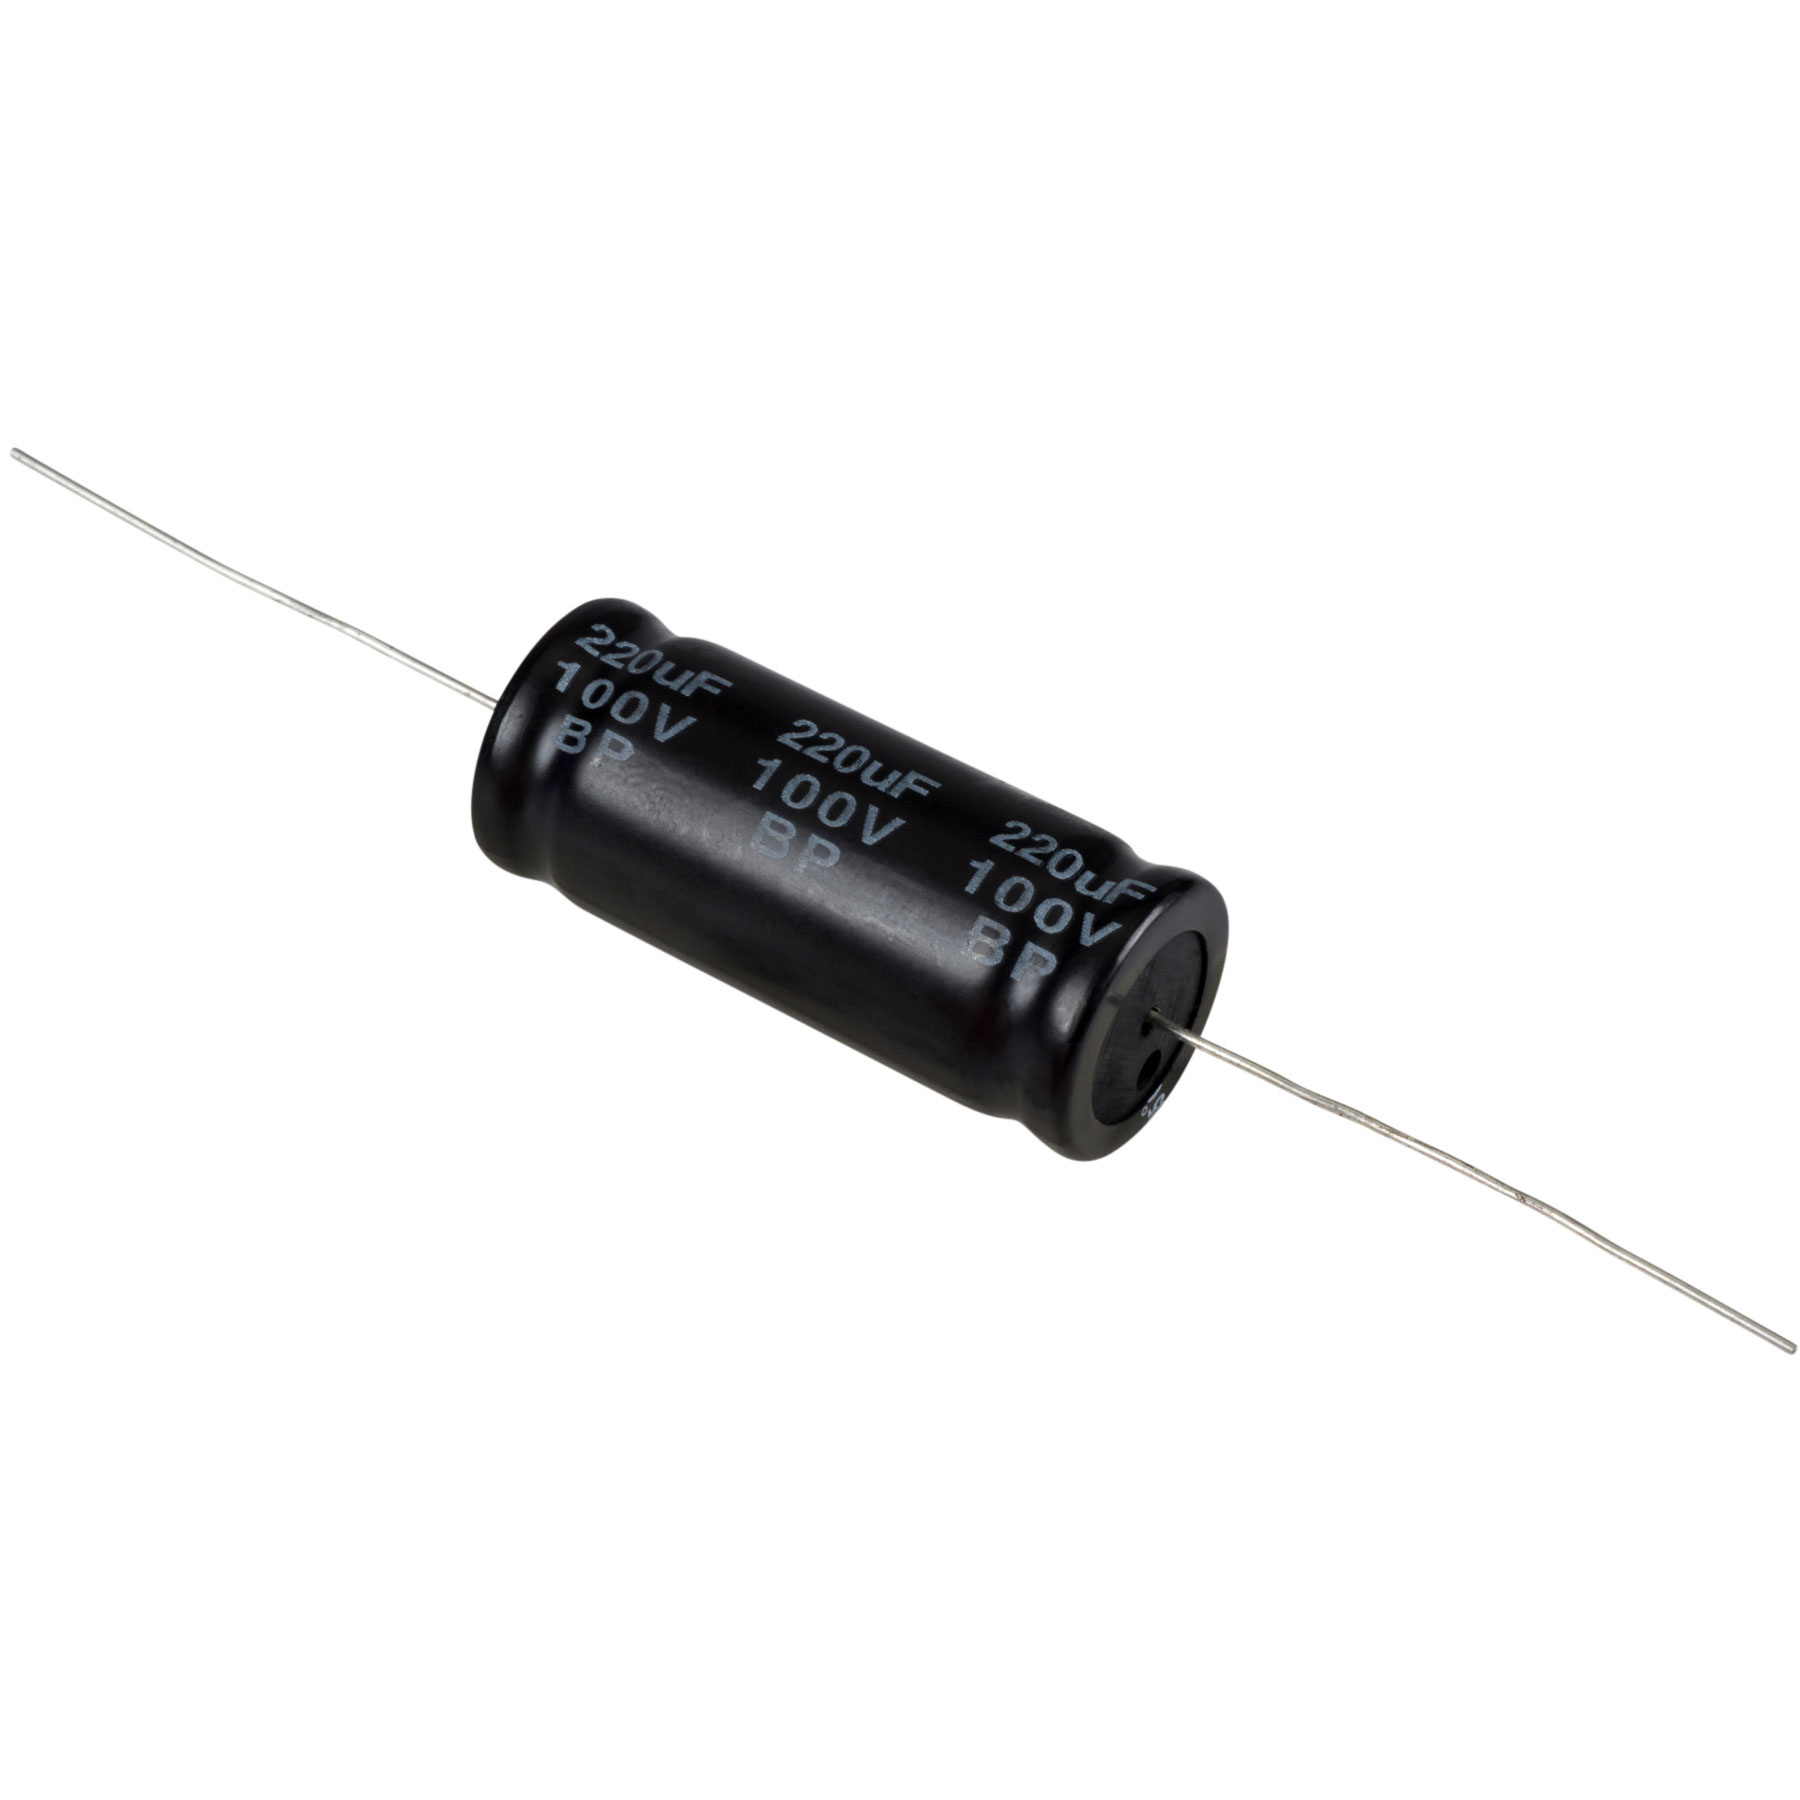 Condensatoare - Condensator electrolitic bipolar 220 µF | 10% | 100 V, audioclub.ro